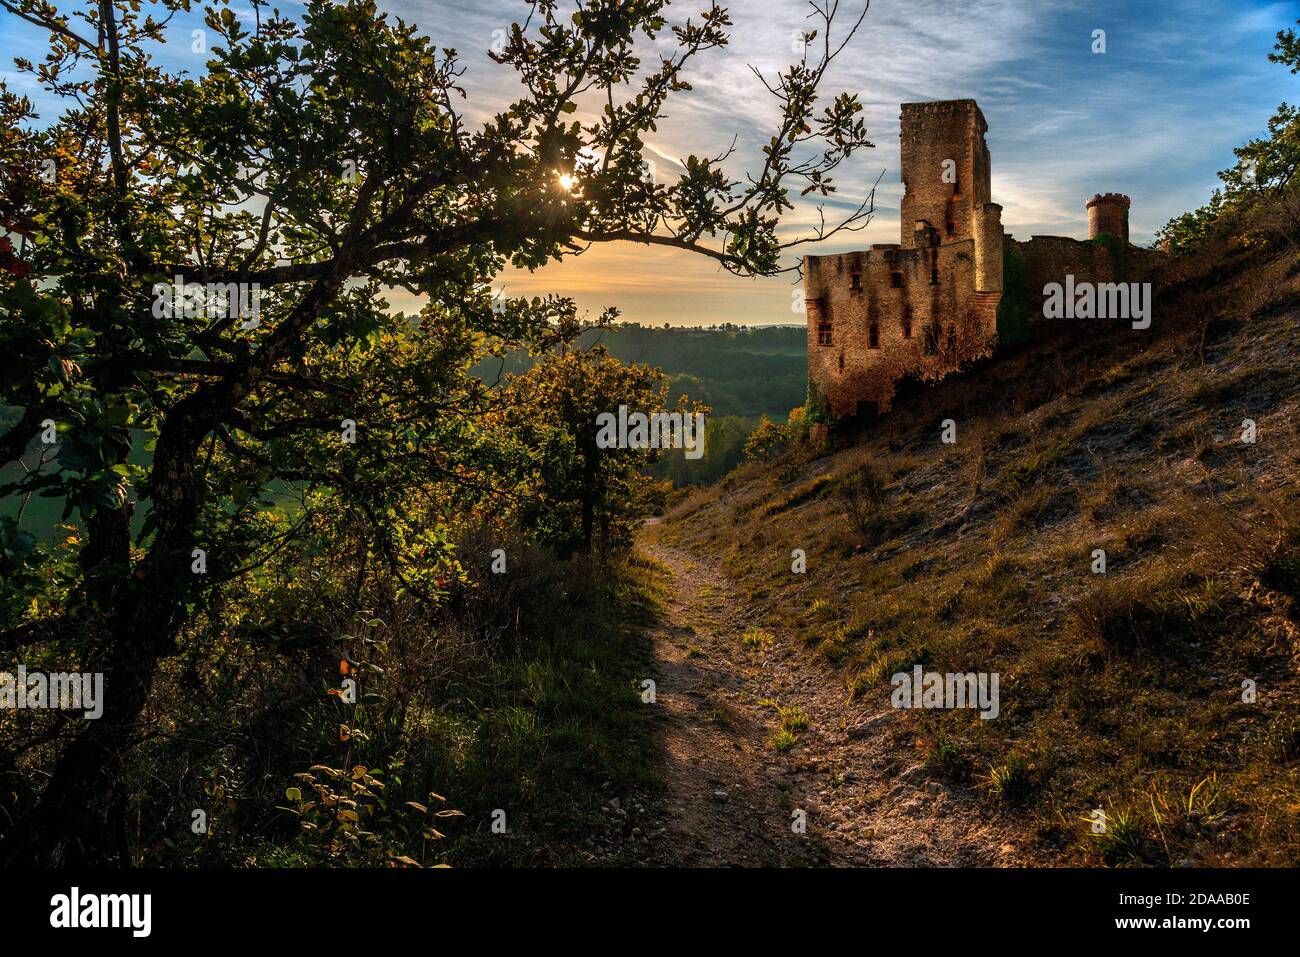 Une image générique (fabriquée) d'un château médiéval brûlé et abandonné quelque part dans le sud de la France pendant la croisade albigésienne. Banque D'Images